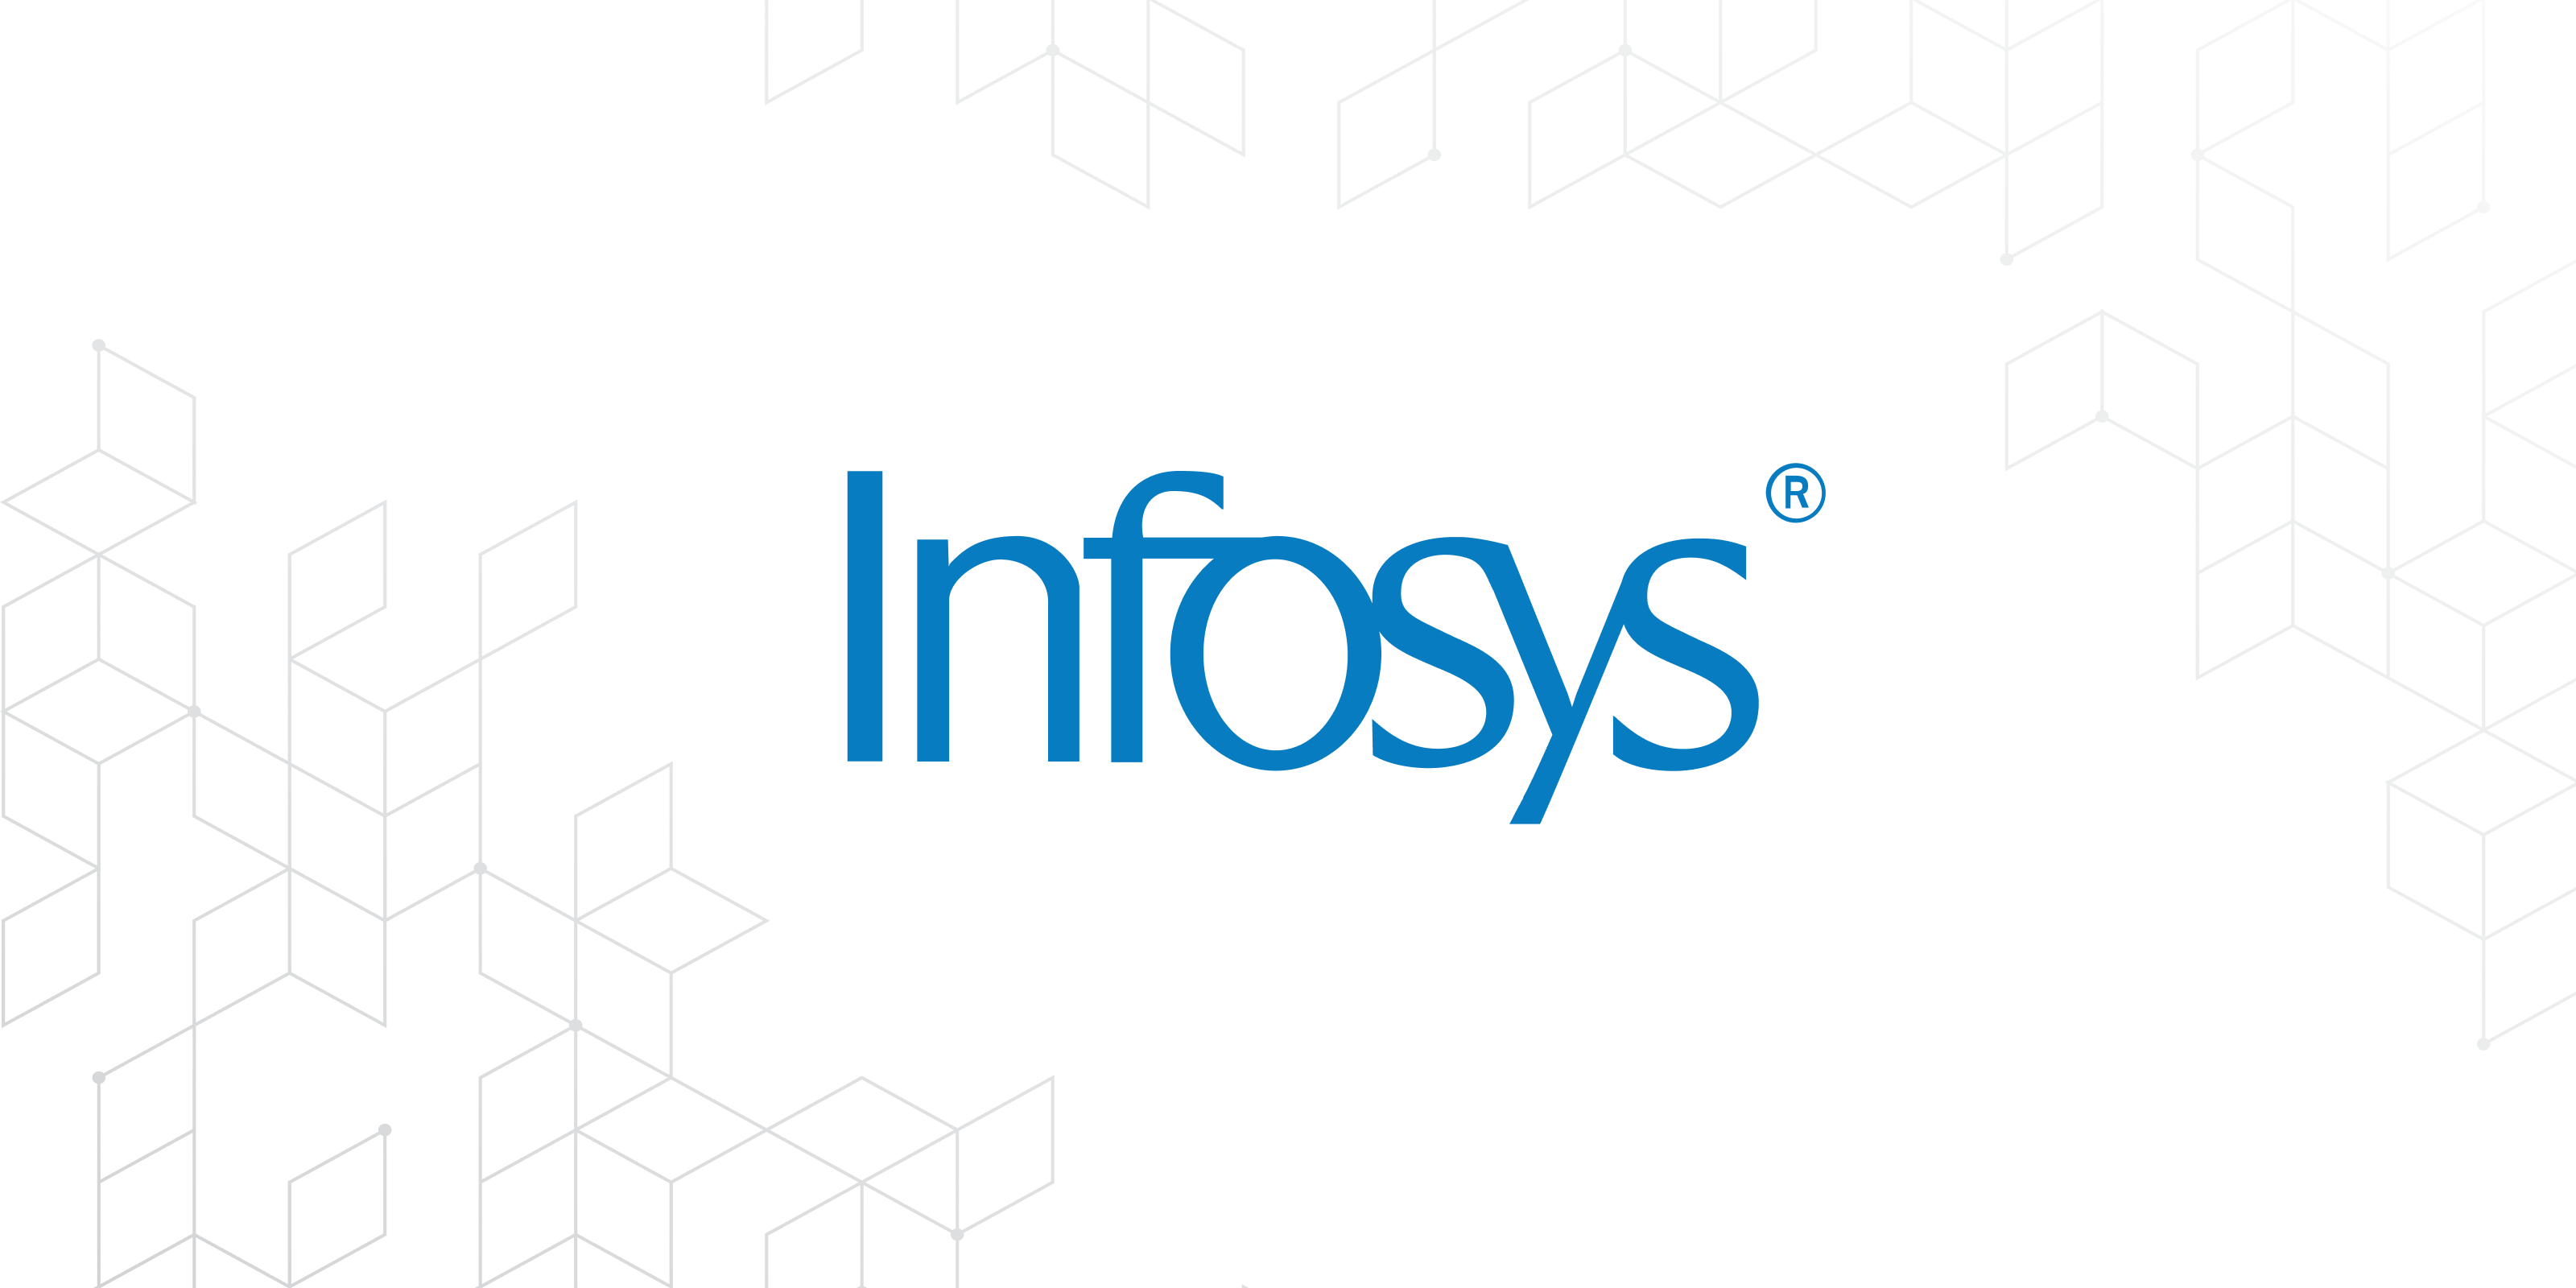 Infosys' logo